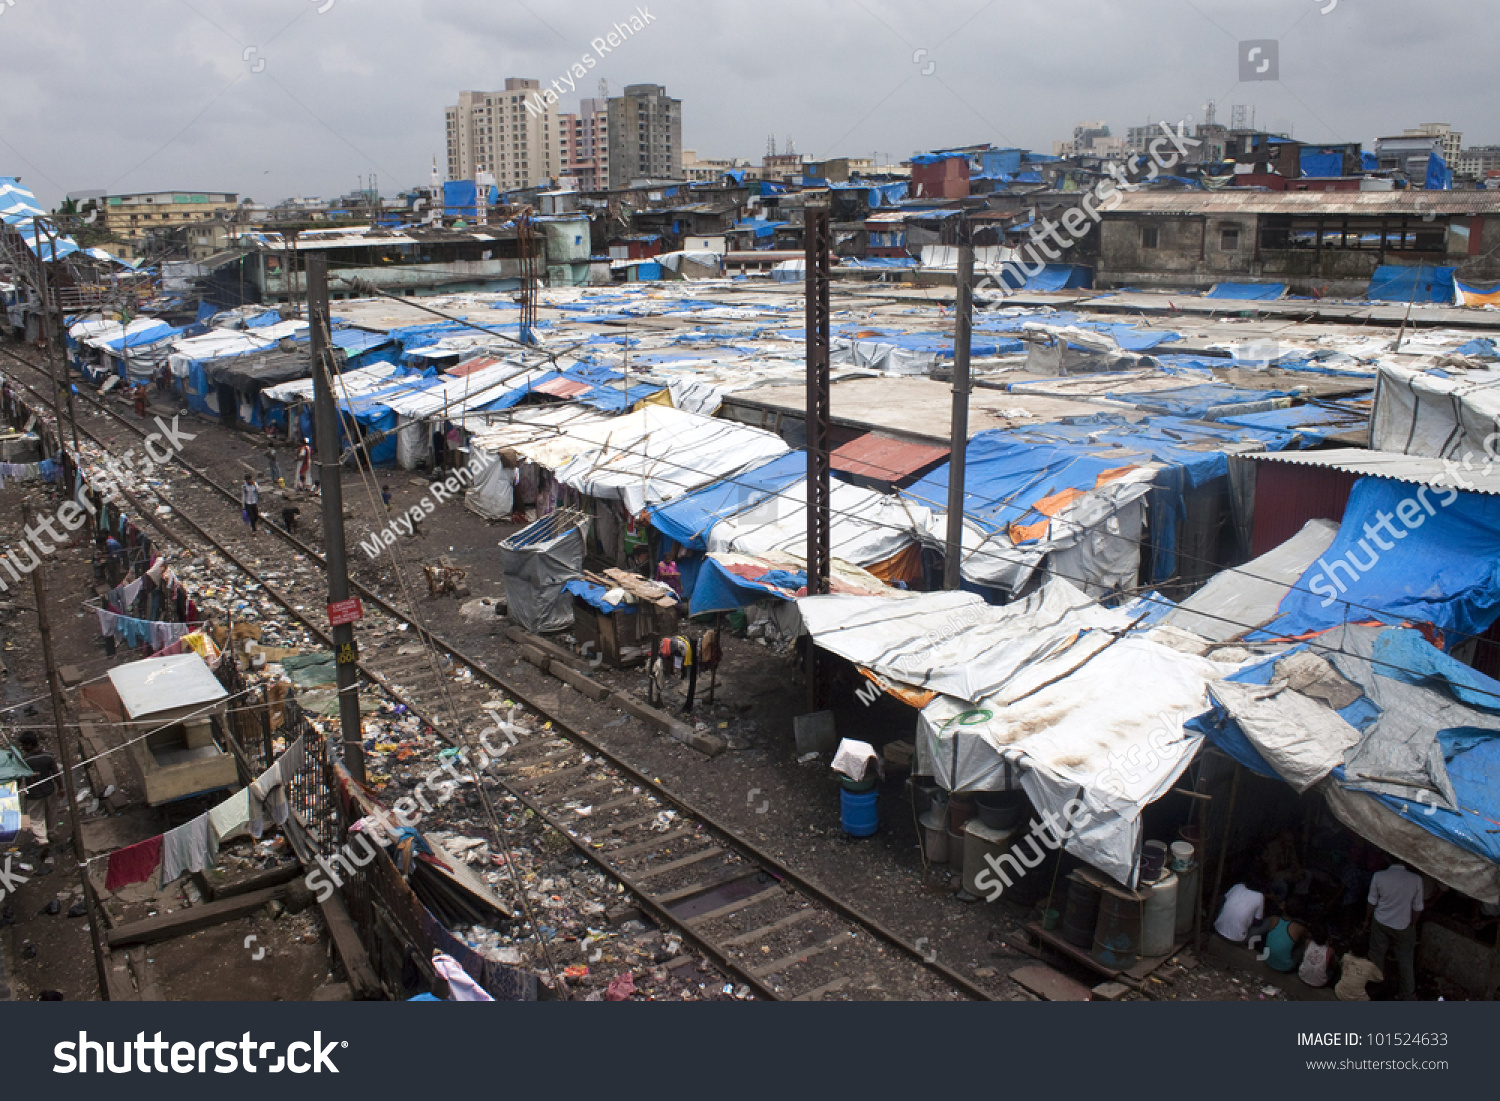 stock-photo-mumbai-august-unidentified-poor-people-living-in-slum-at-august-in-mumbai-india-101524633.jpg